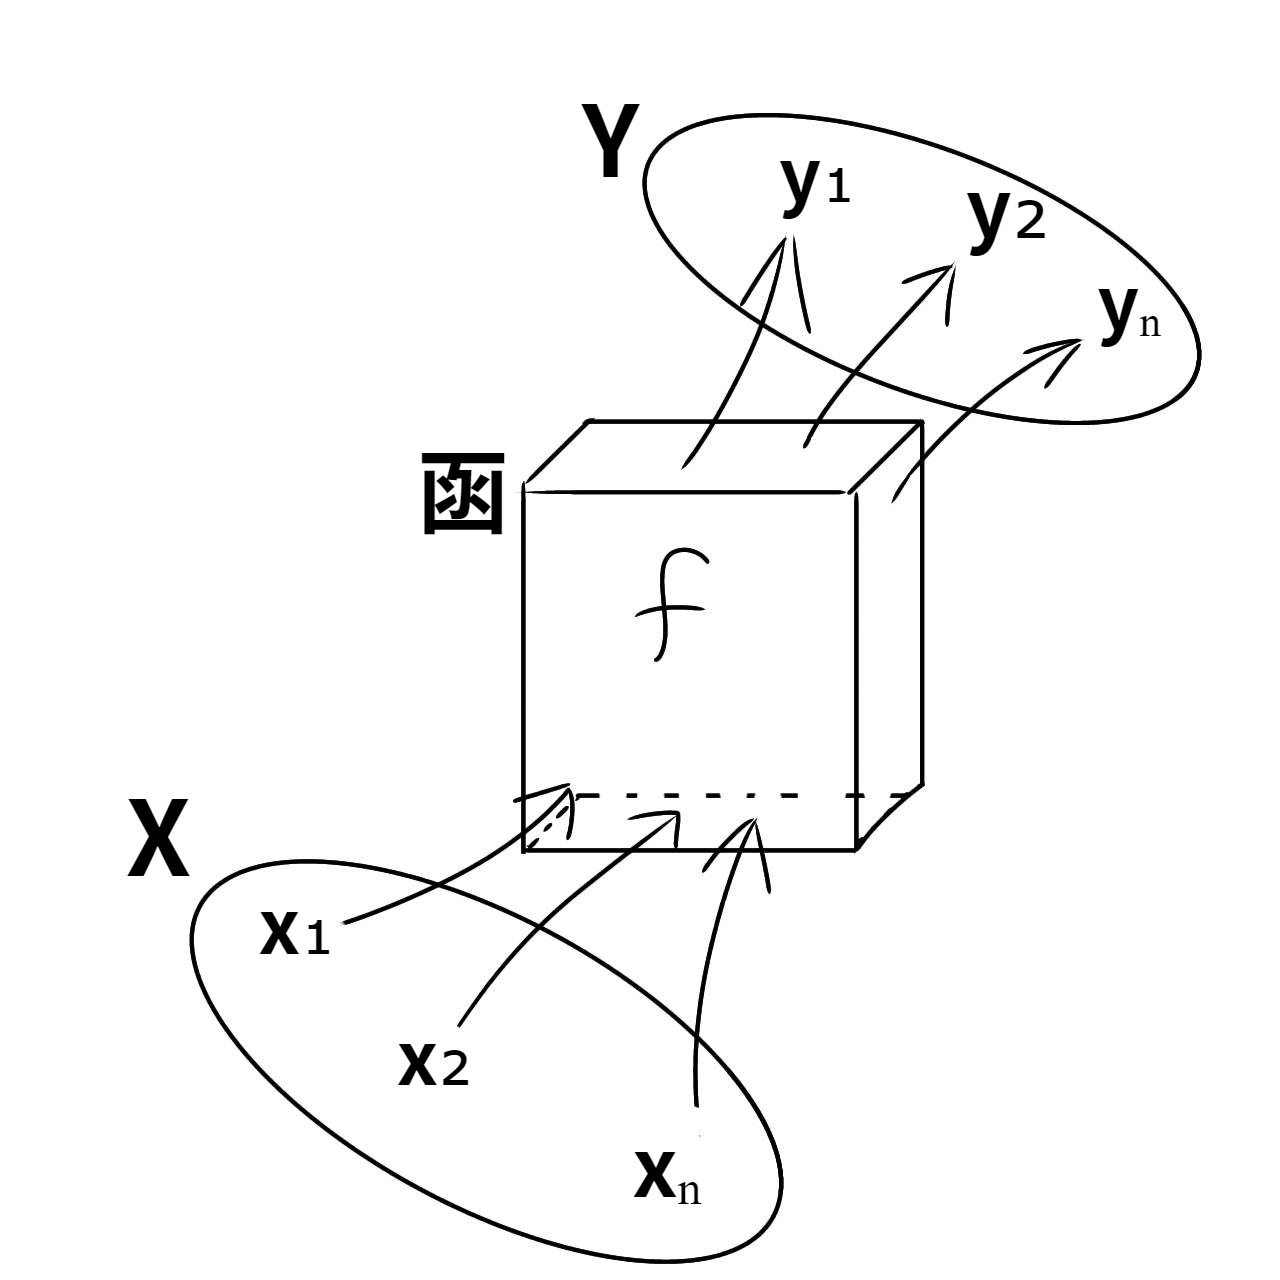 で集合Xを集合Yに変換する関数（函数）f